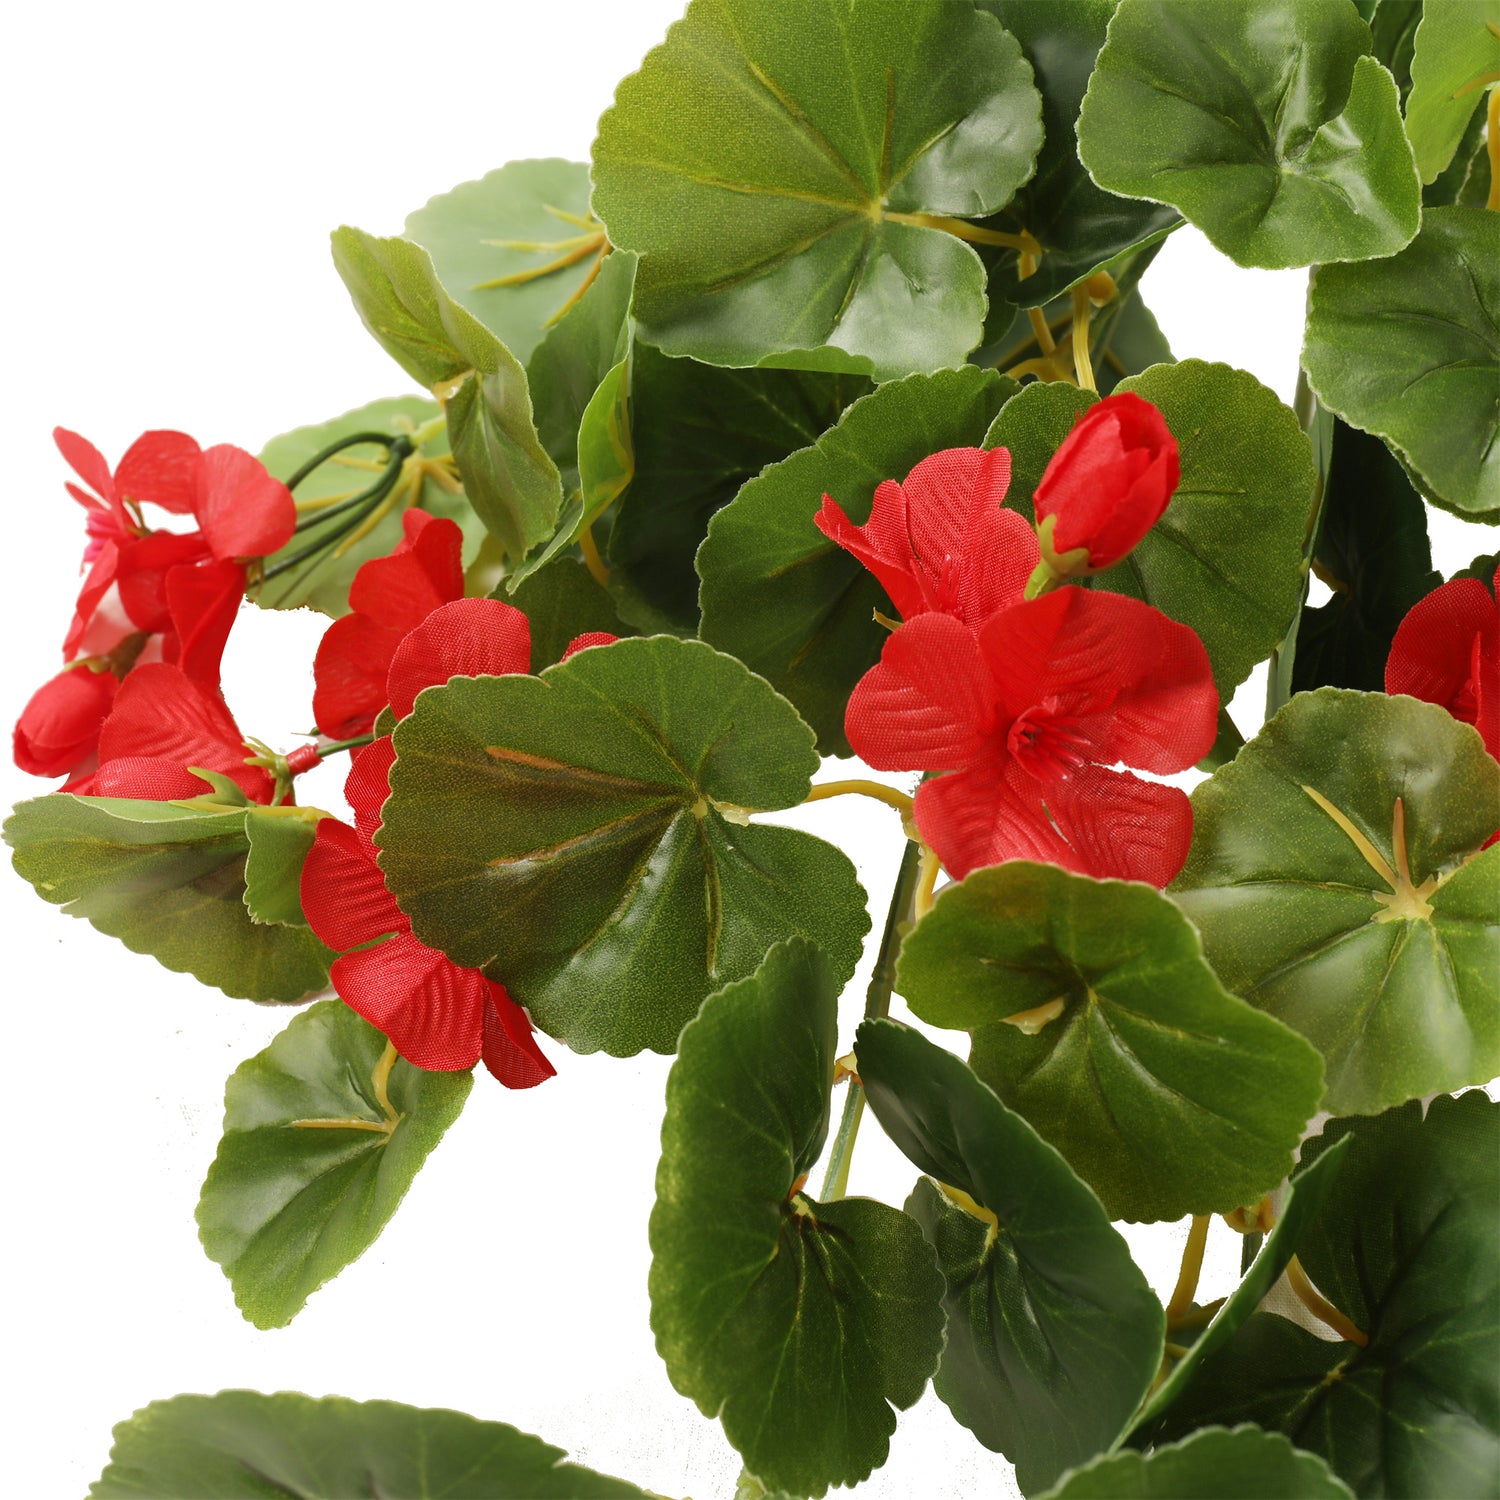 Enredadera artificial colgante con flores rojas, 86 hojas, 6 flores de 60 cm